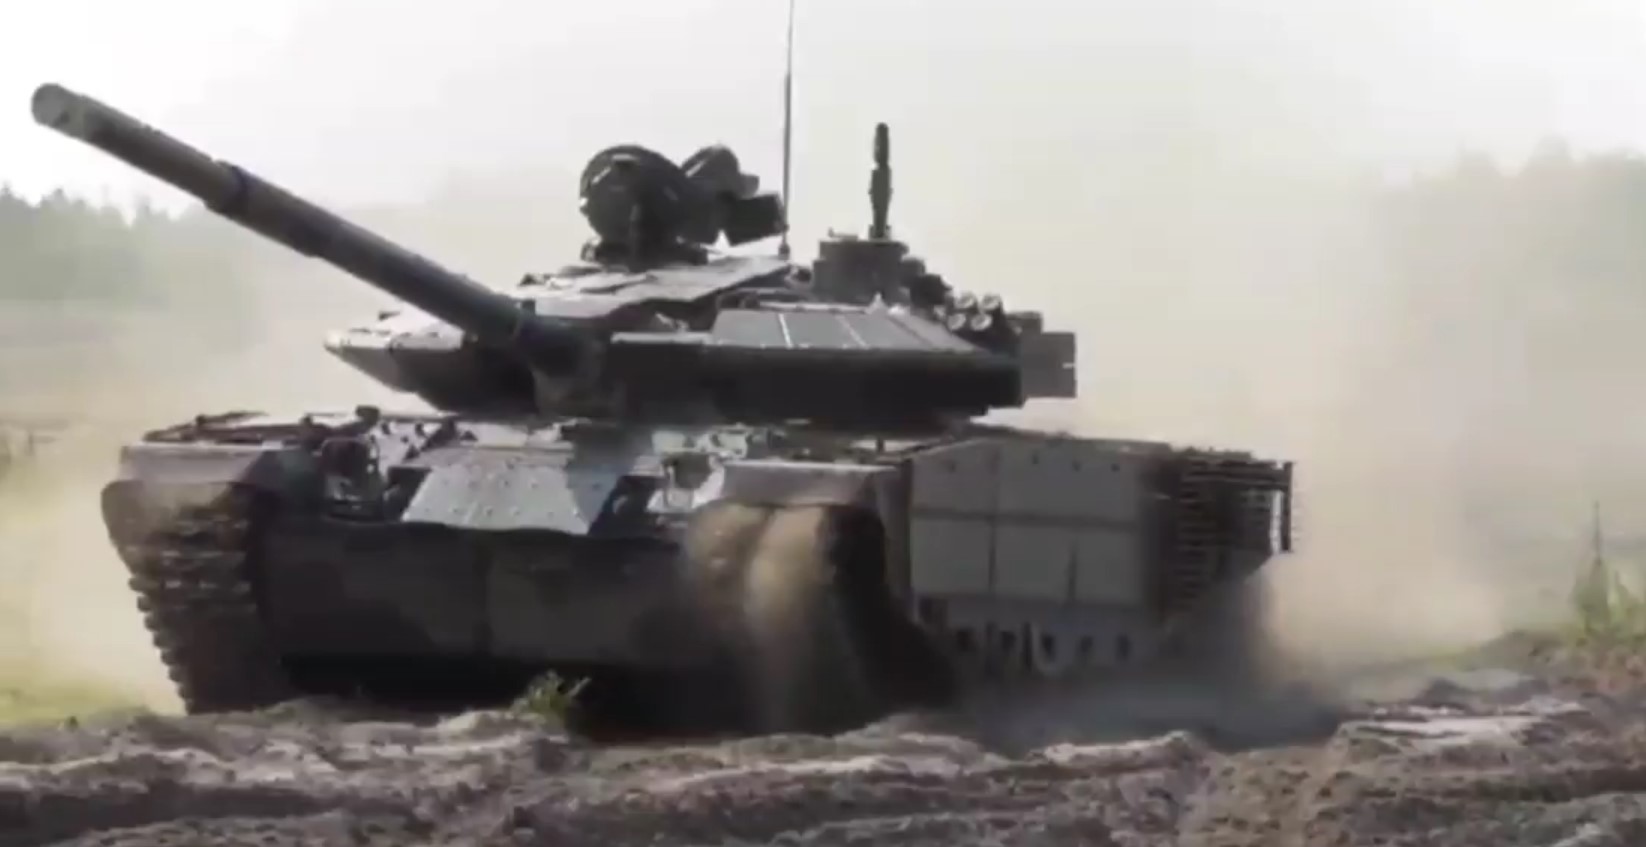 Дослідний зразок білоруської модернізації танка Т-72Б. Липень 2022. Білорусь. Кадр з відео “Госкомвоенпром”